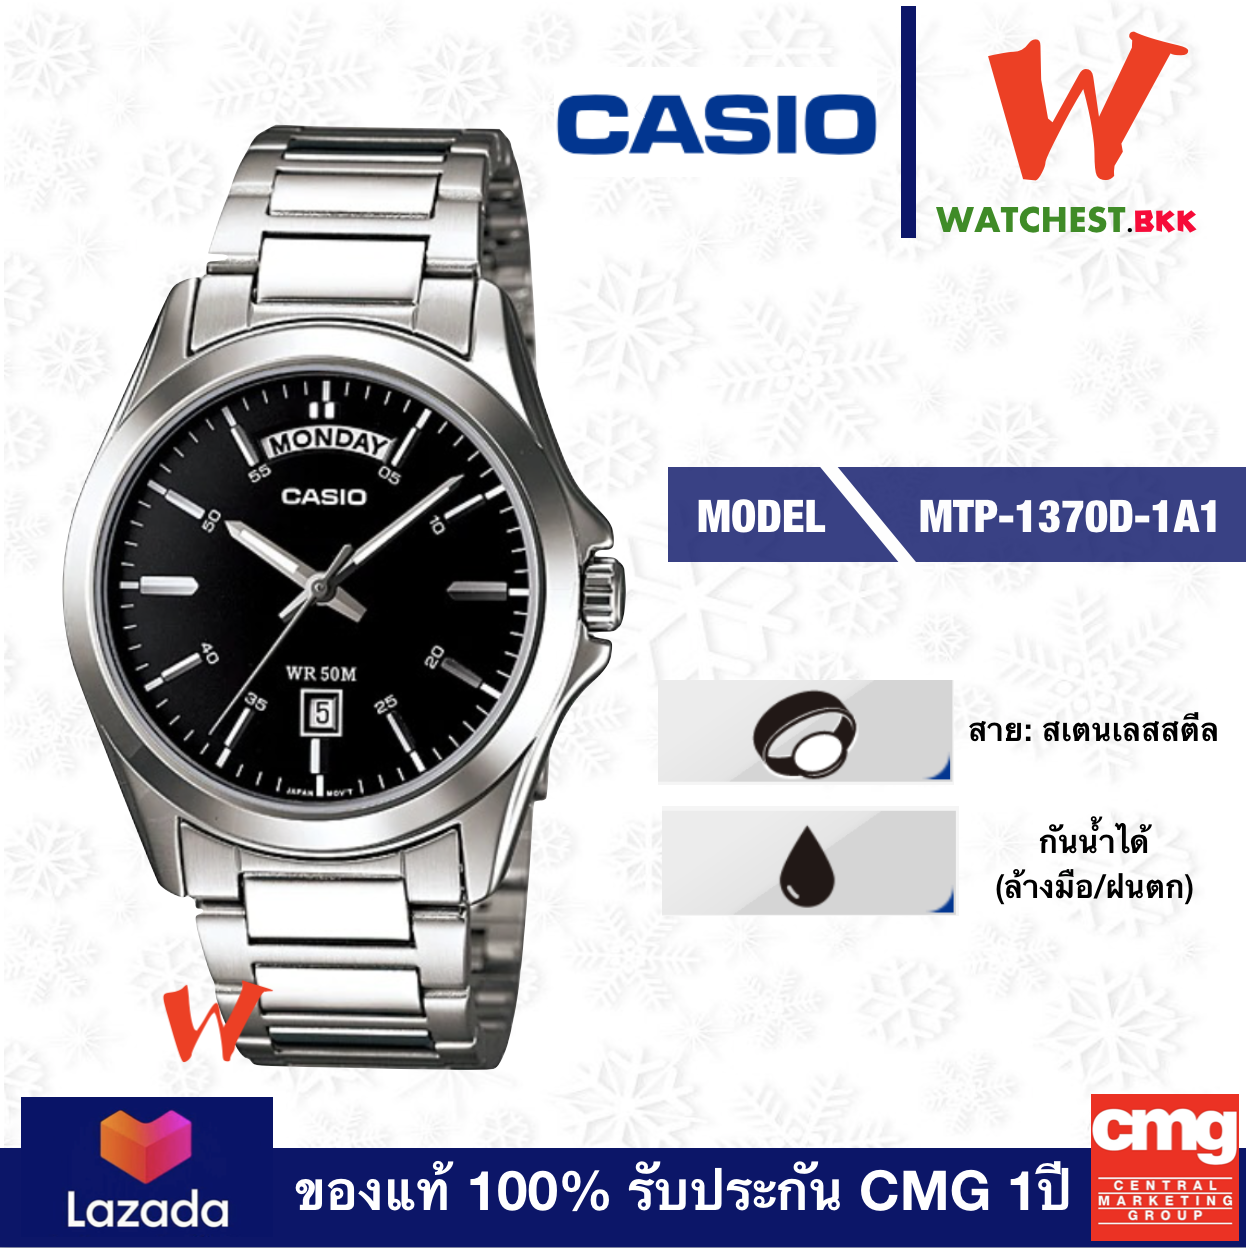 casio นาฬิกาข้อมือผู้ชาย สายสเตนเลส รุ่น MTP-1370D-1A1 คาสิโอ้ สายเหล็ก ตัวล็อกแบบ บานพับ (watchestbkk คาสิโอ แท้ ของแท้100% ประกัน CMG)